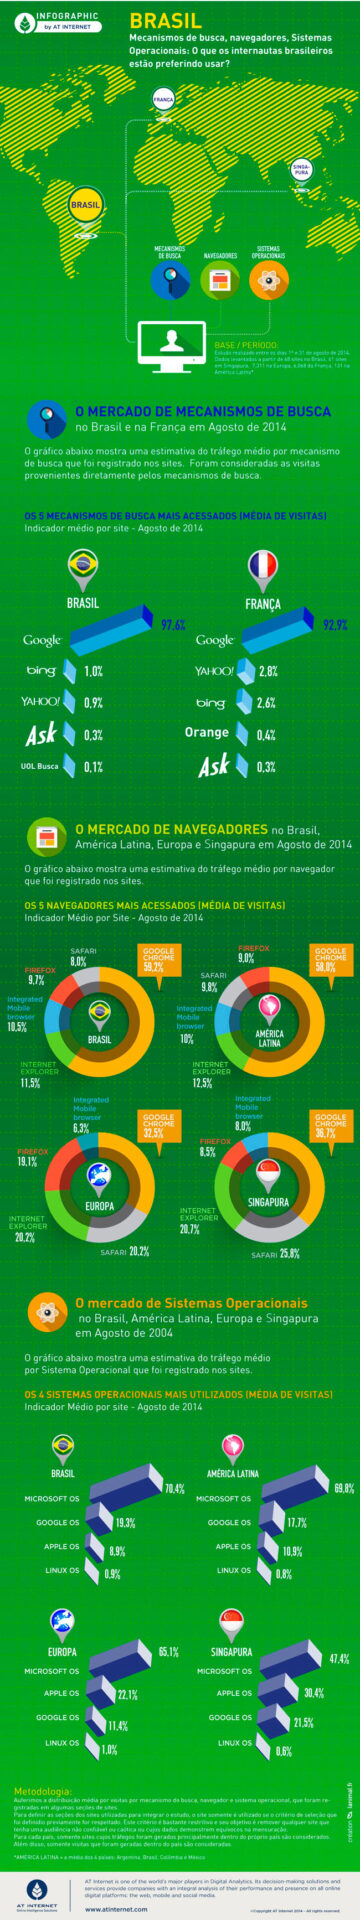 O que os brasileiros preferem ao navegar pela internet